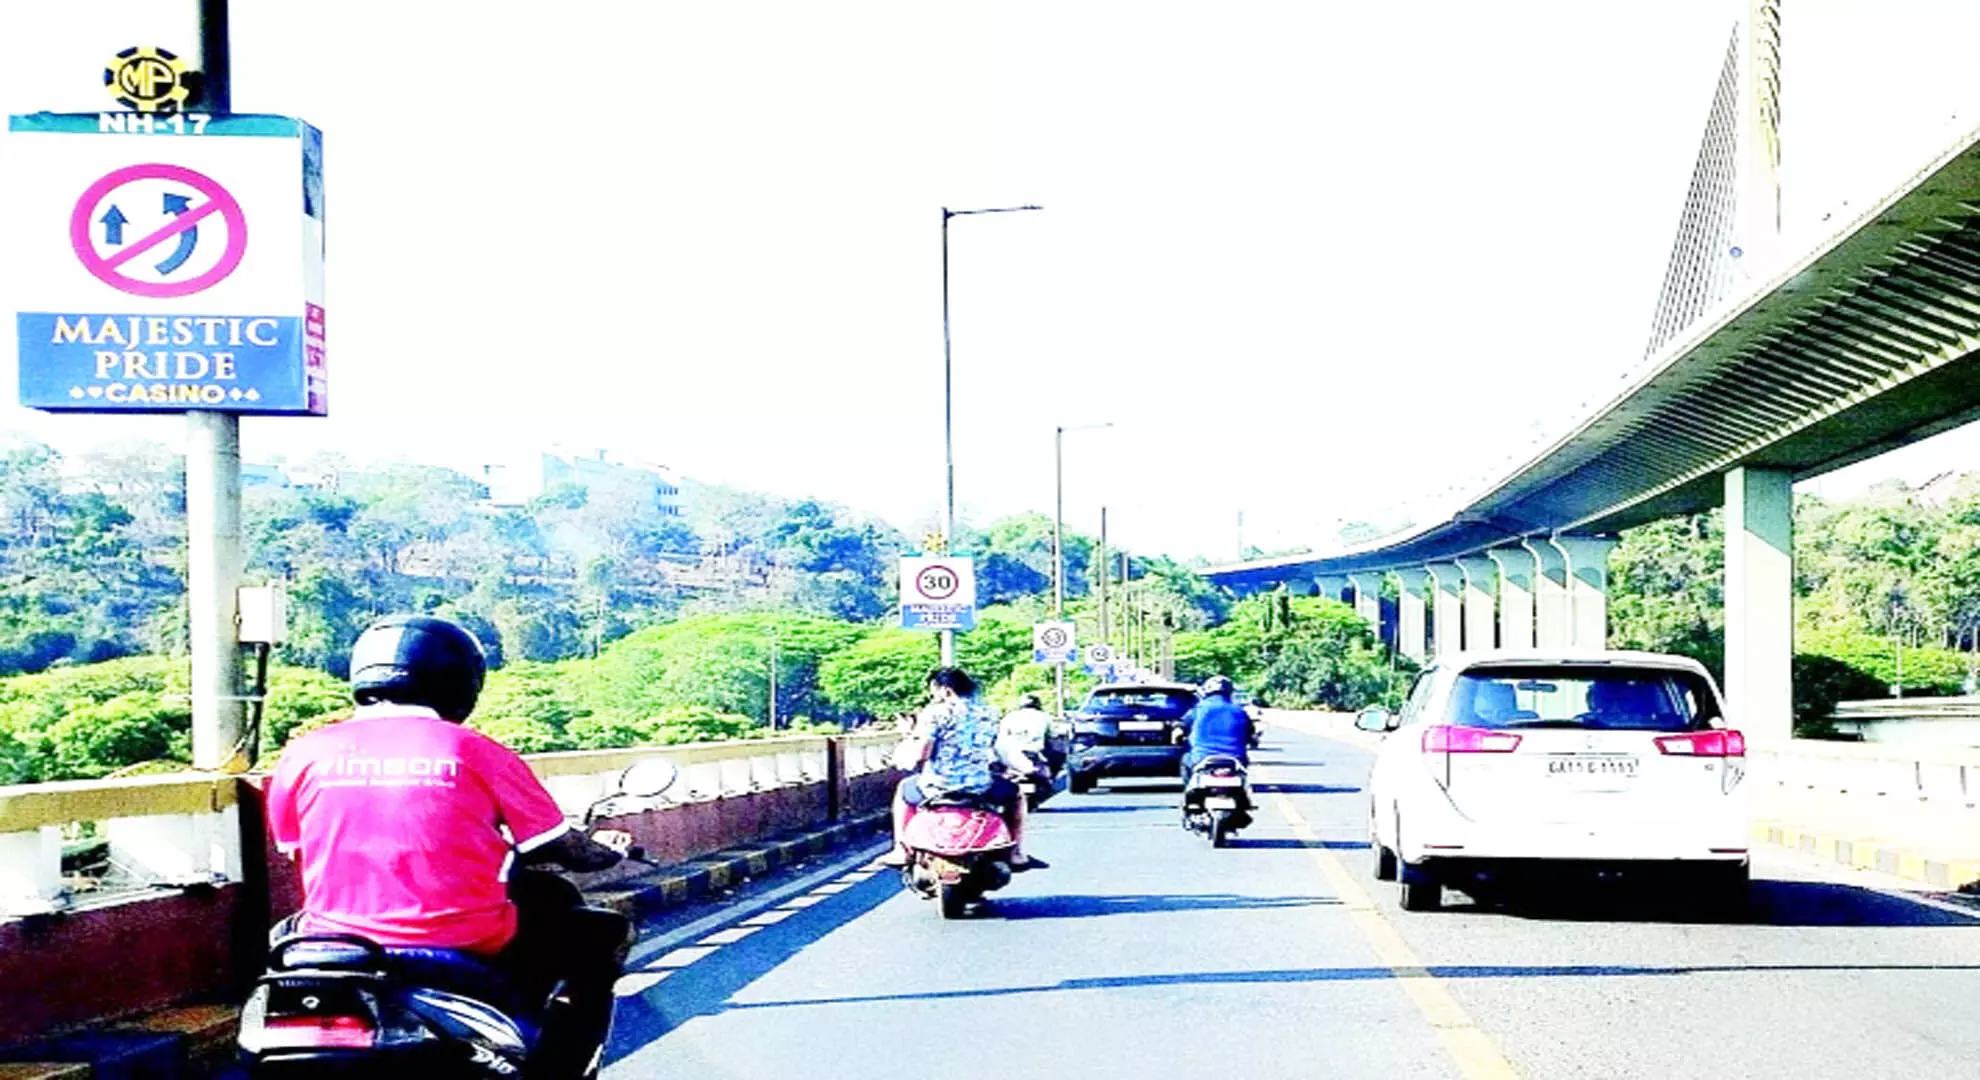 उत्तरी गोवा कलेक्टर की गाड़ी मंडोवी पुल पर खतरनाक तरीके से ओवरटेक करती है